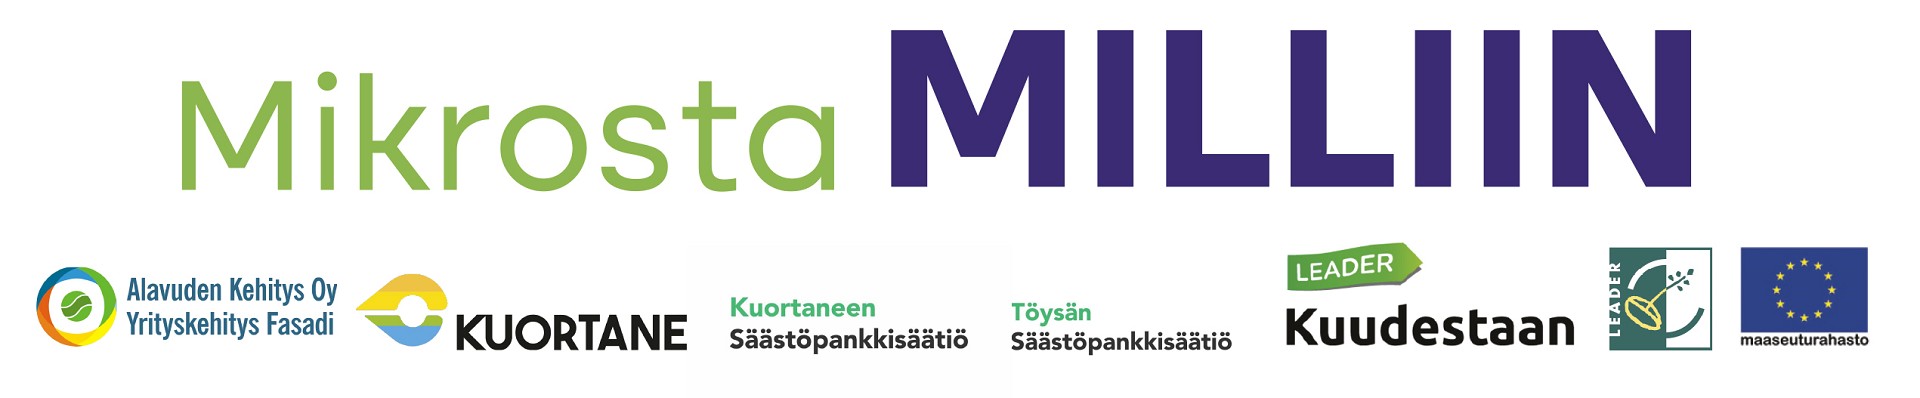 Mikrosta Milliin -yrityskehityshankkeessa autetaan pienyrittäjiä Alavudella ja Kuortaneella kehittämään toimintaansa.